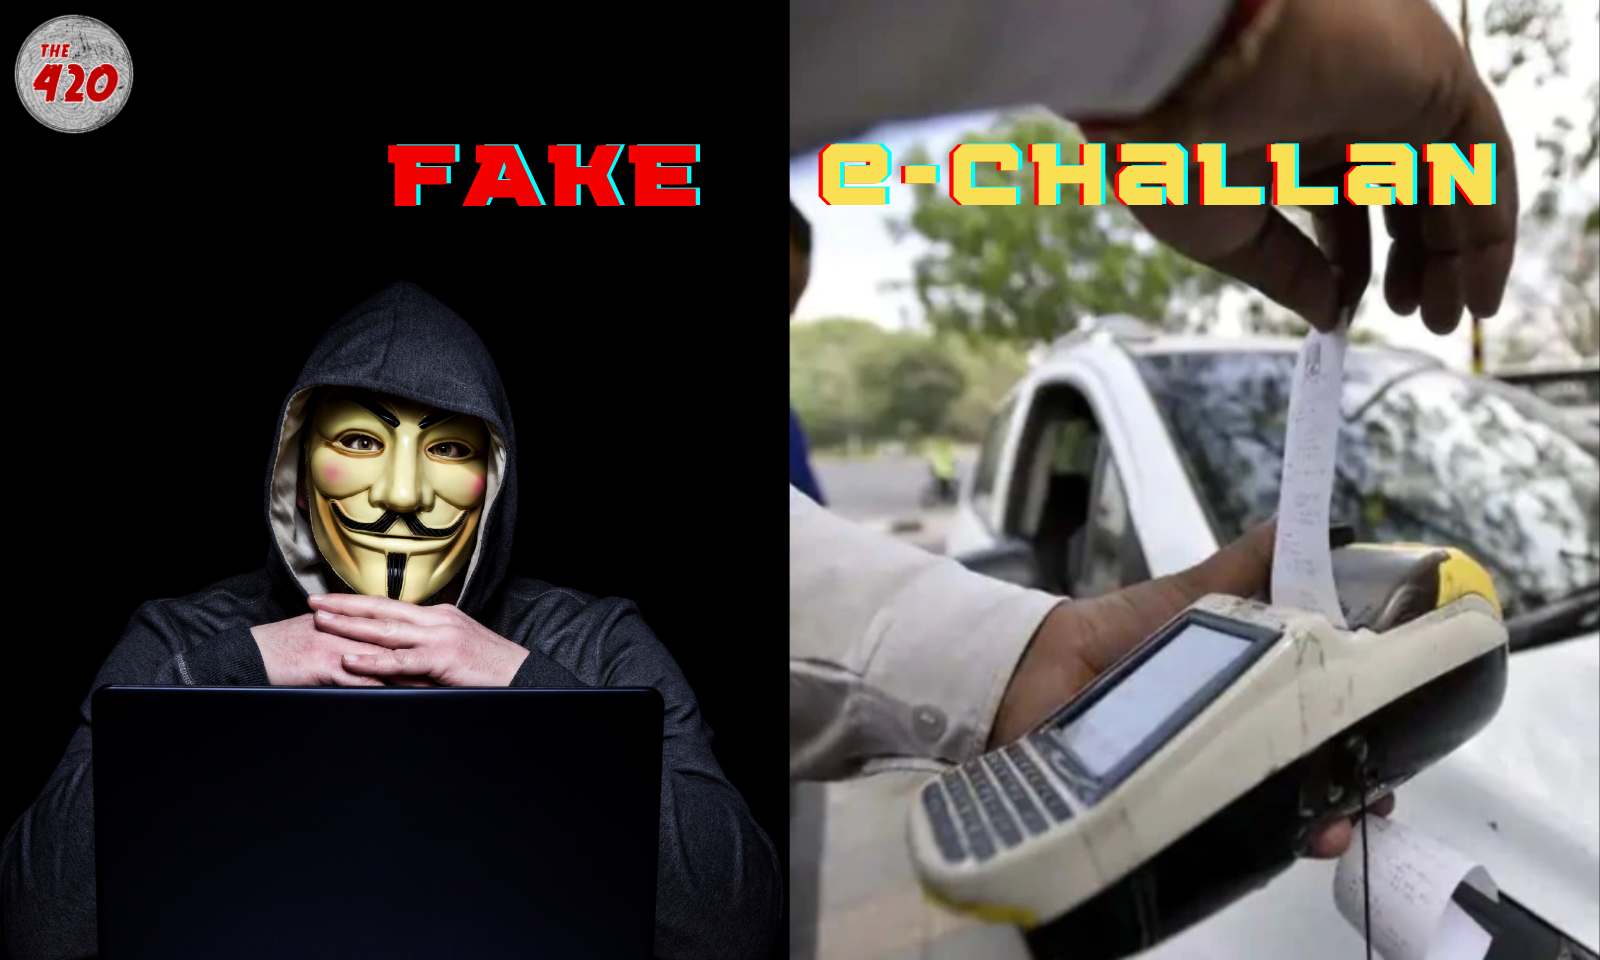 E challan scam: फर्जी ई-चालान के नाम पर लोगों को लूट रहे ठग, जानें क्या है इससे बचने का तरीका